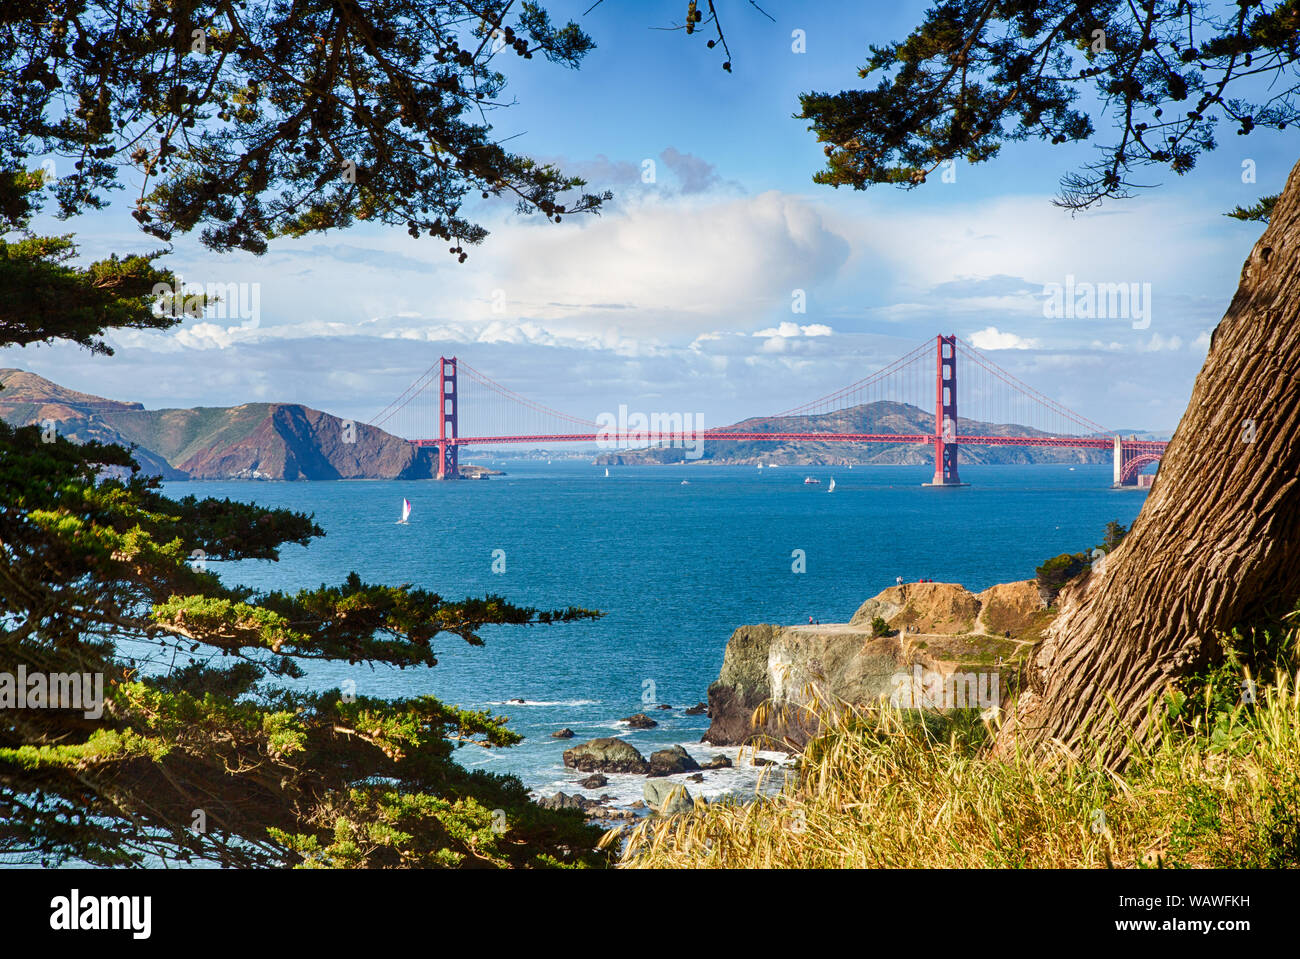 Voiliers dans la baie de San Francisco avec le Golden Gate Bridge en arrière-plan en tant que prises à partir de la fin des terres. Banque D'Images